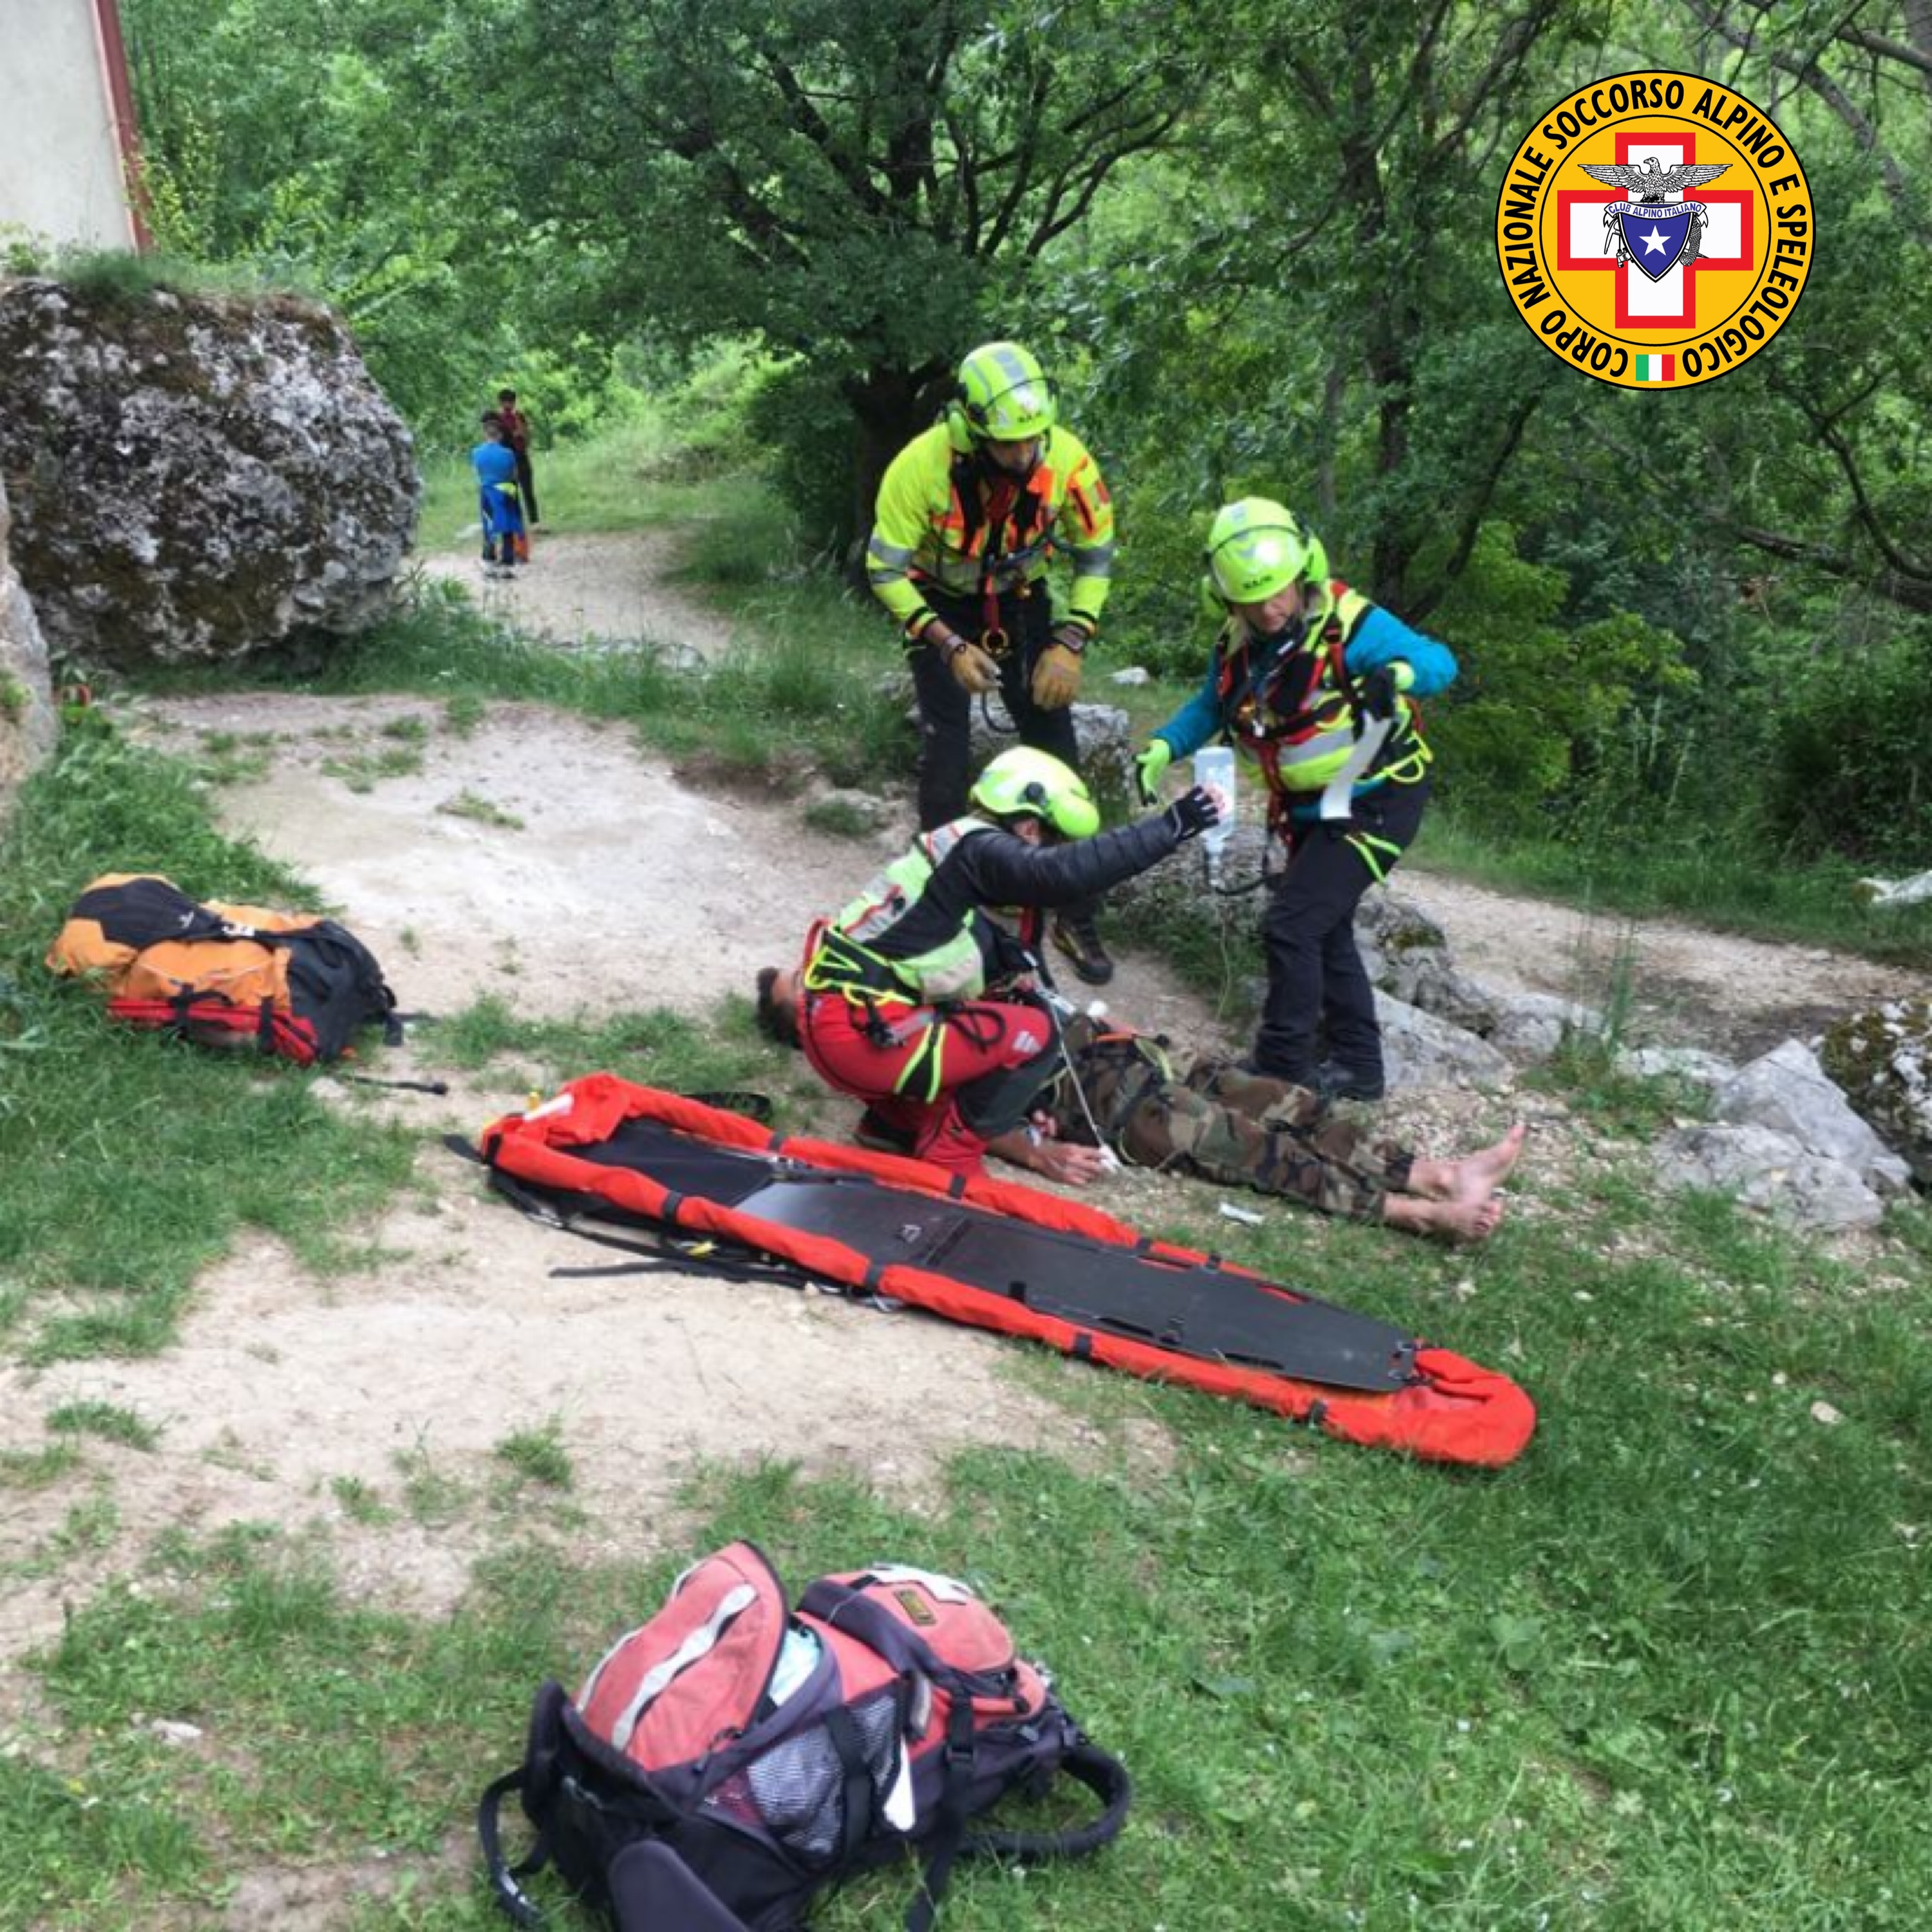 Il Soccorso Alpino interviene per un incidente nel Parco Velino Sirente, giovane scivola in arrampicata e fa un volo di 10 metri 